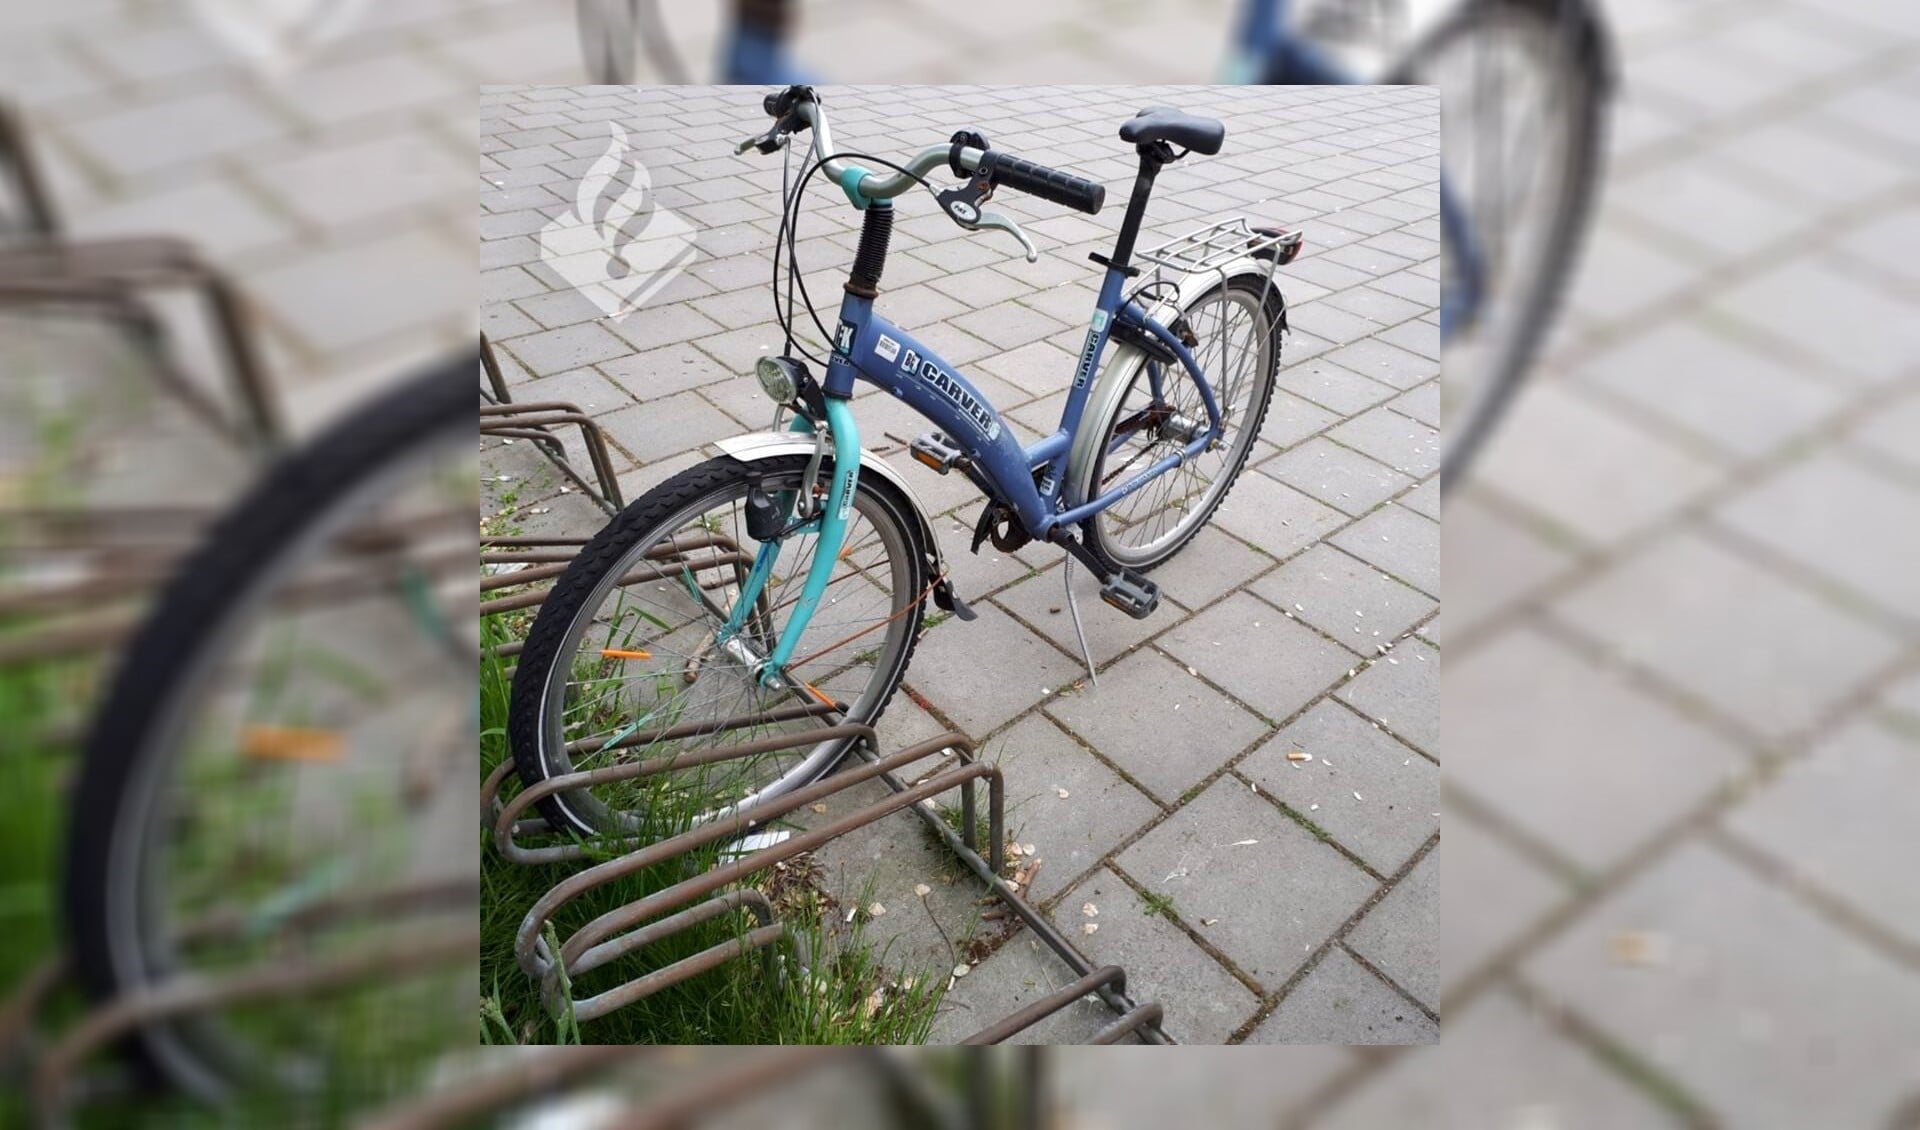 Deze fiets staat op het schoolplein aan de Dobbelaan 4 in Leidschendam. (Foto: Politie LV)